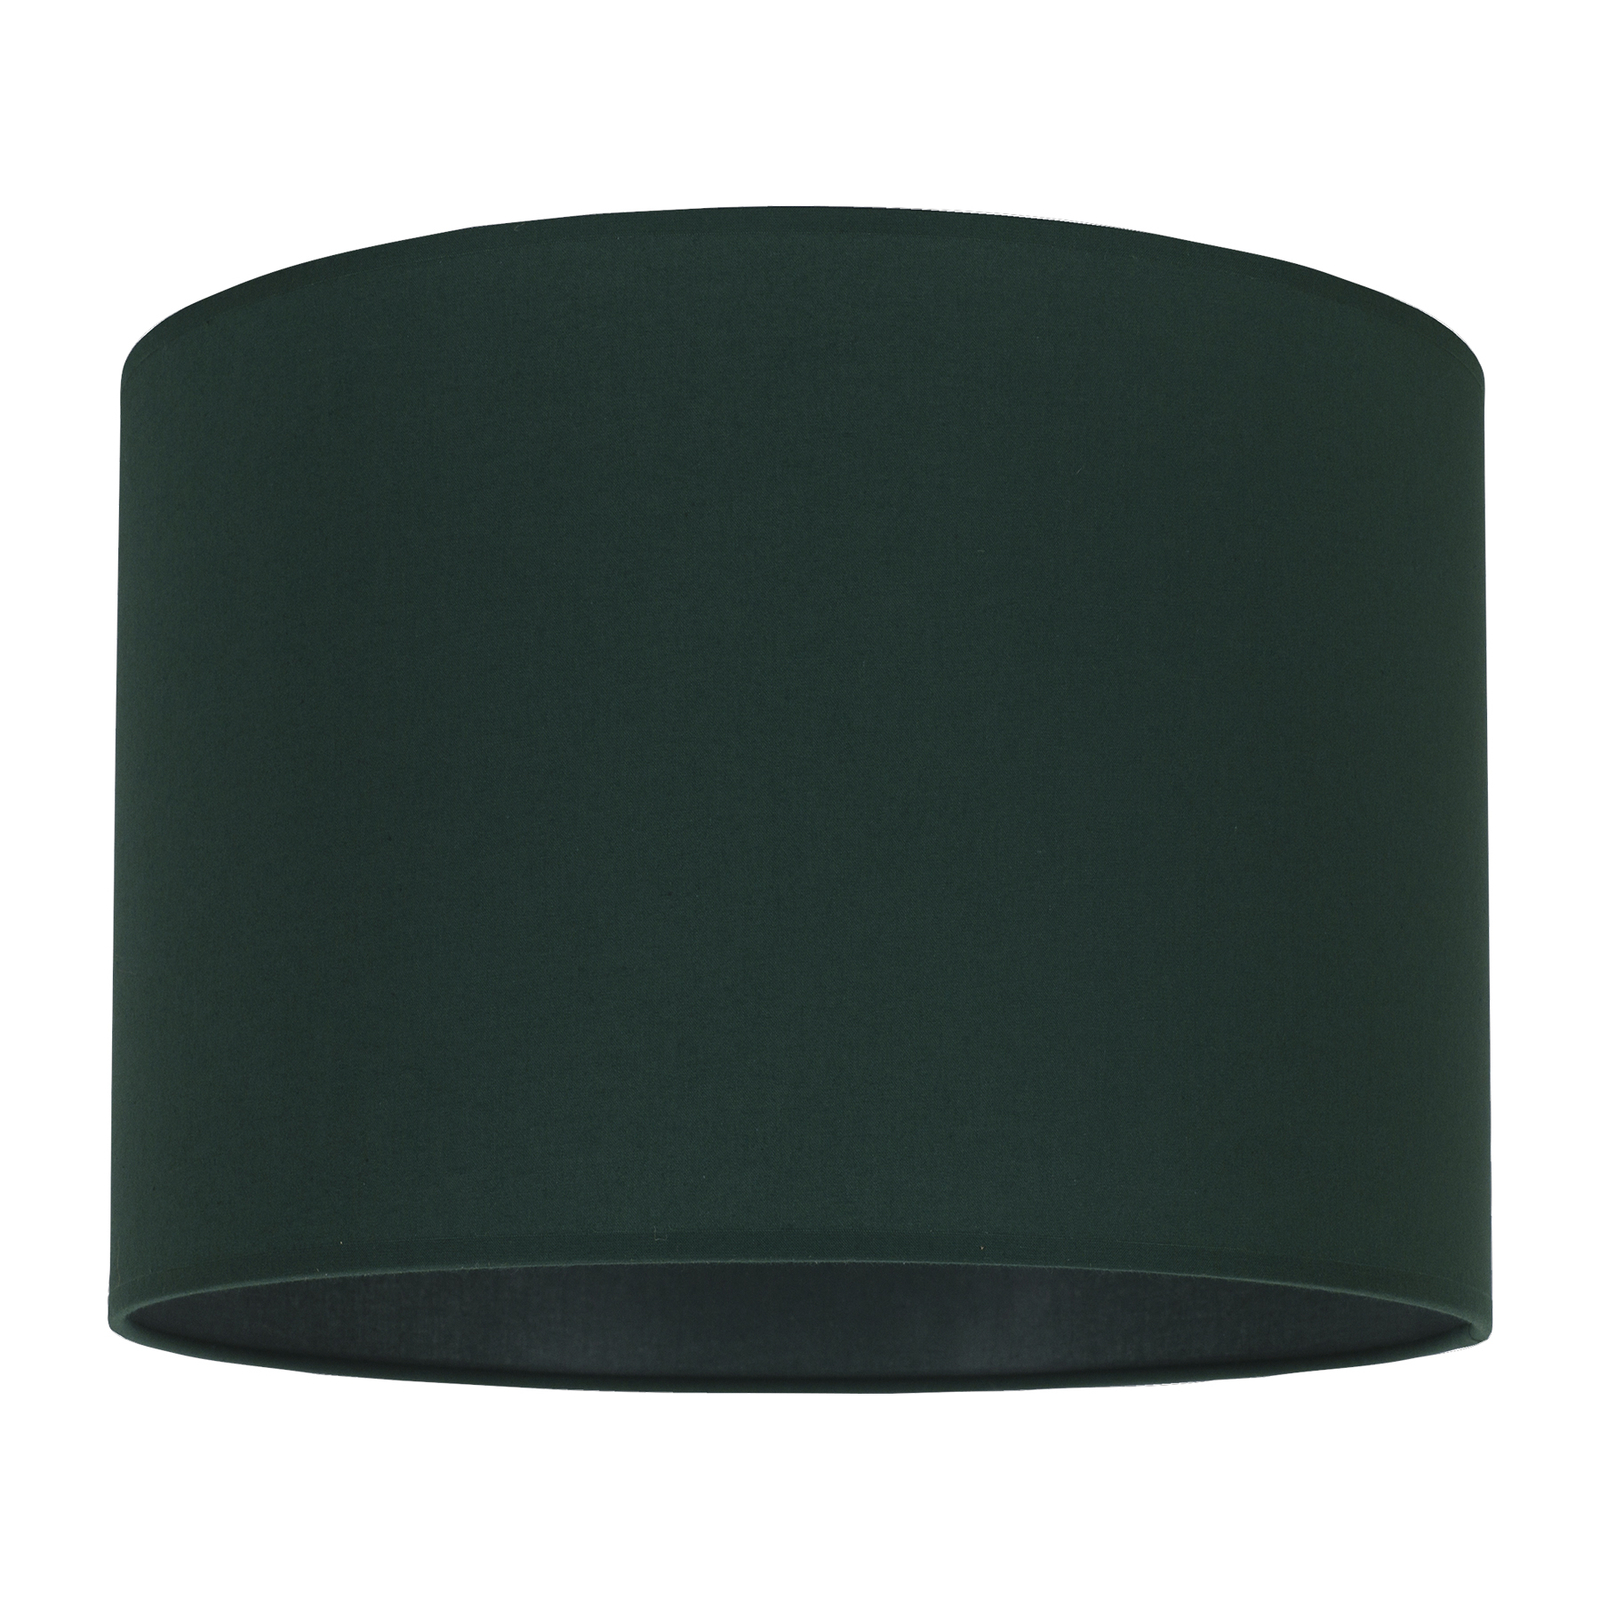 Lampeskjerm Roller, grønn, Ø 25 cm, høyde 18 cm